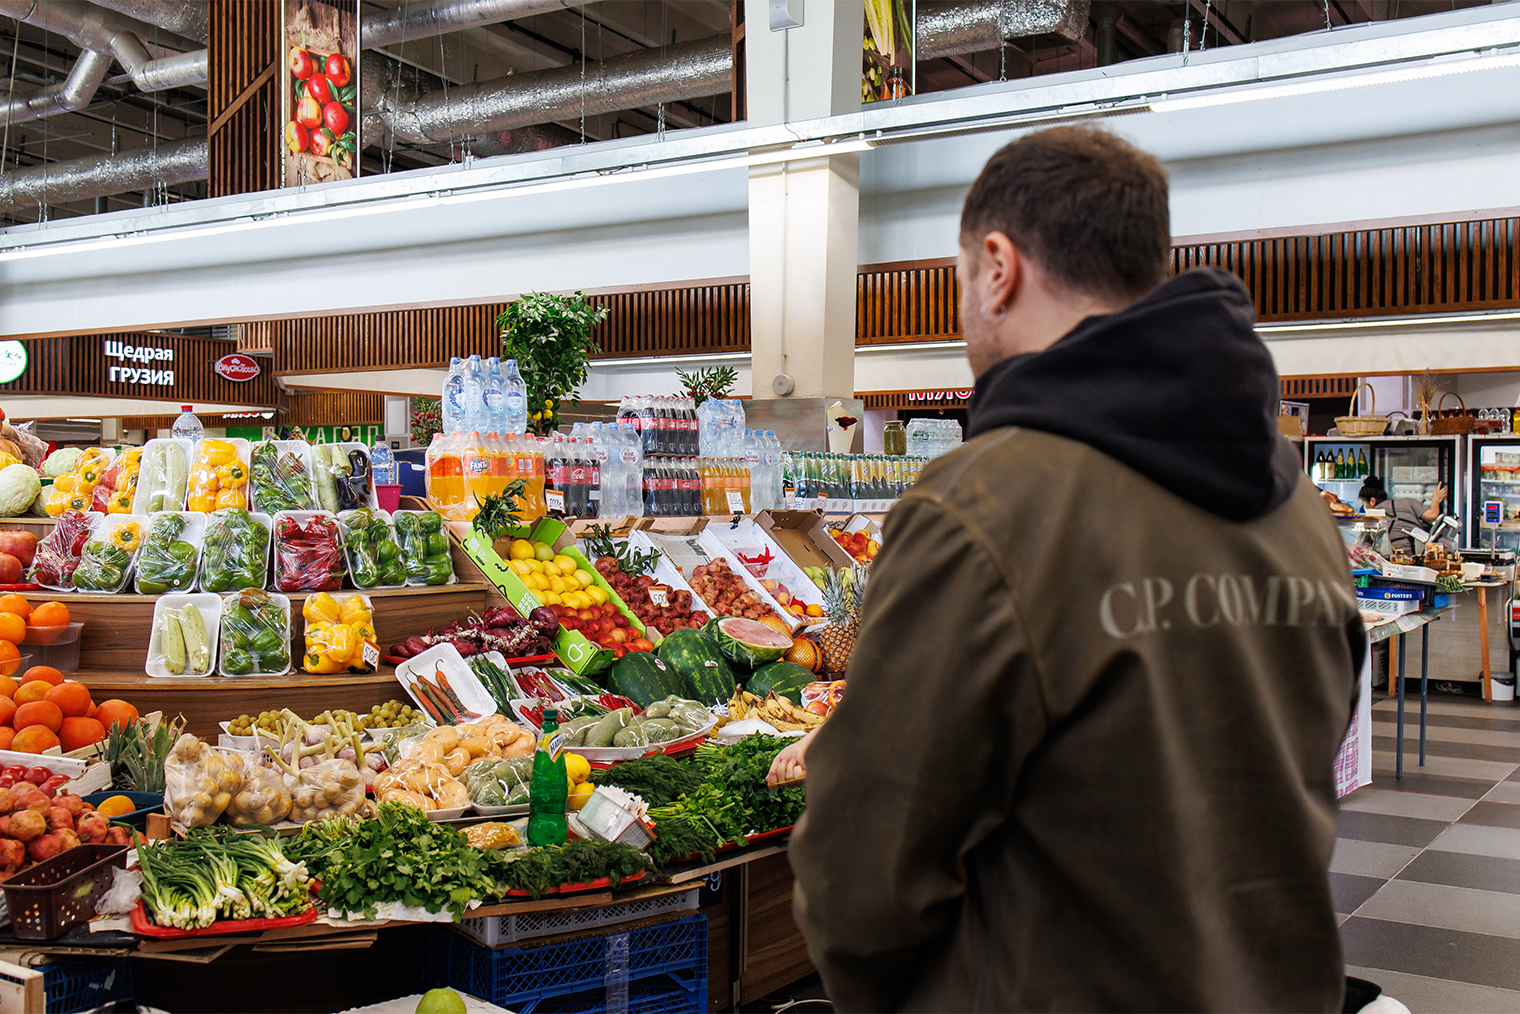 За необычными и редкими ингредиентами вроде пастернака шеф ходит на китайский рынок в Люблино — там огромный выбор экзотических продуктов: крабы, моллюски, интересные фрукты и овощи. От такого разнообразия разбегаются глаза — хочется взять все